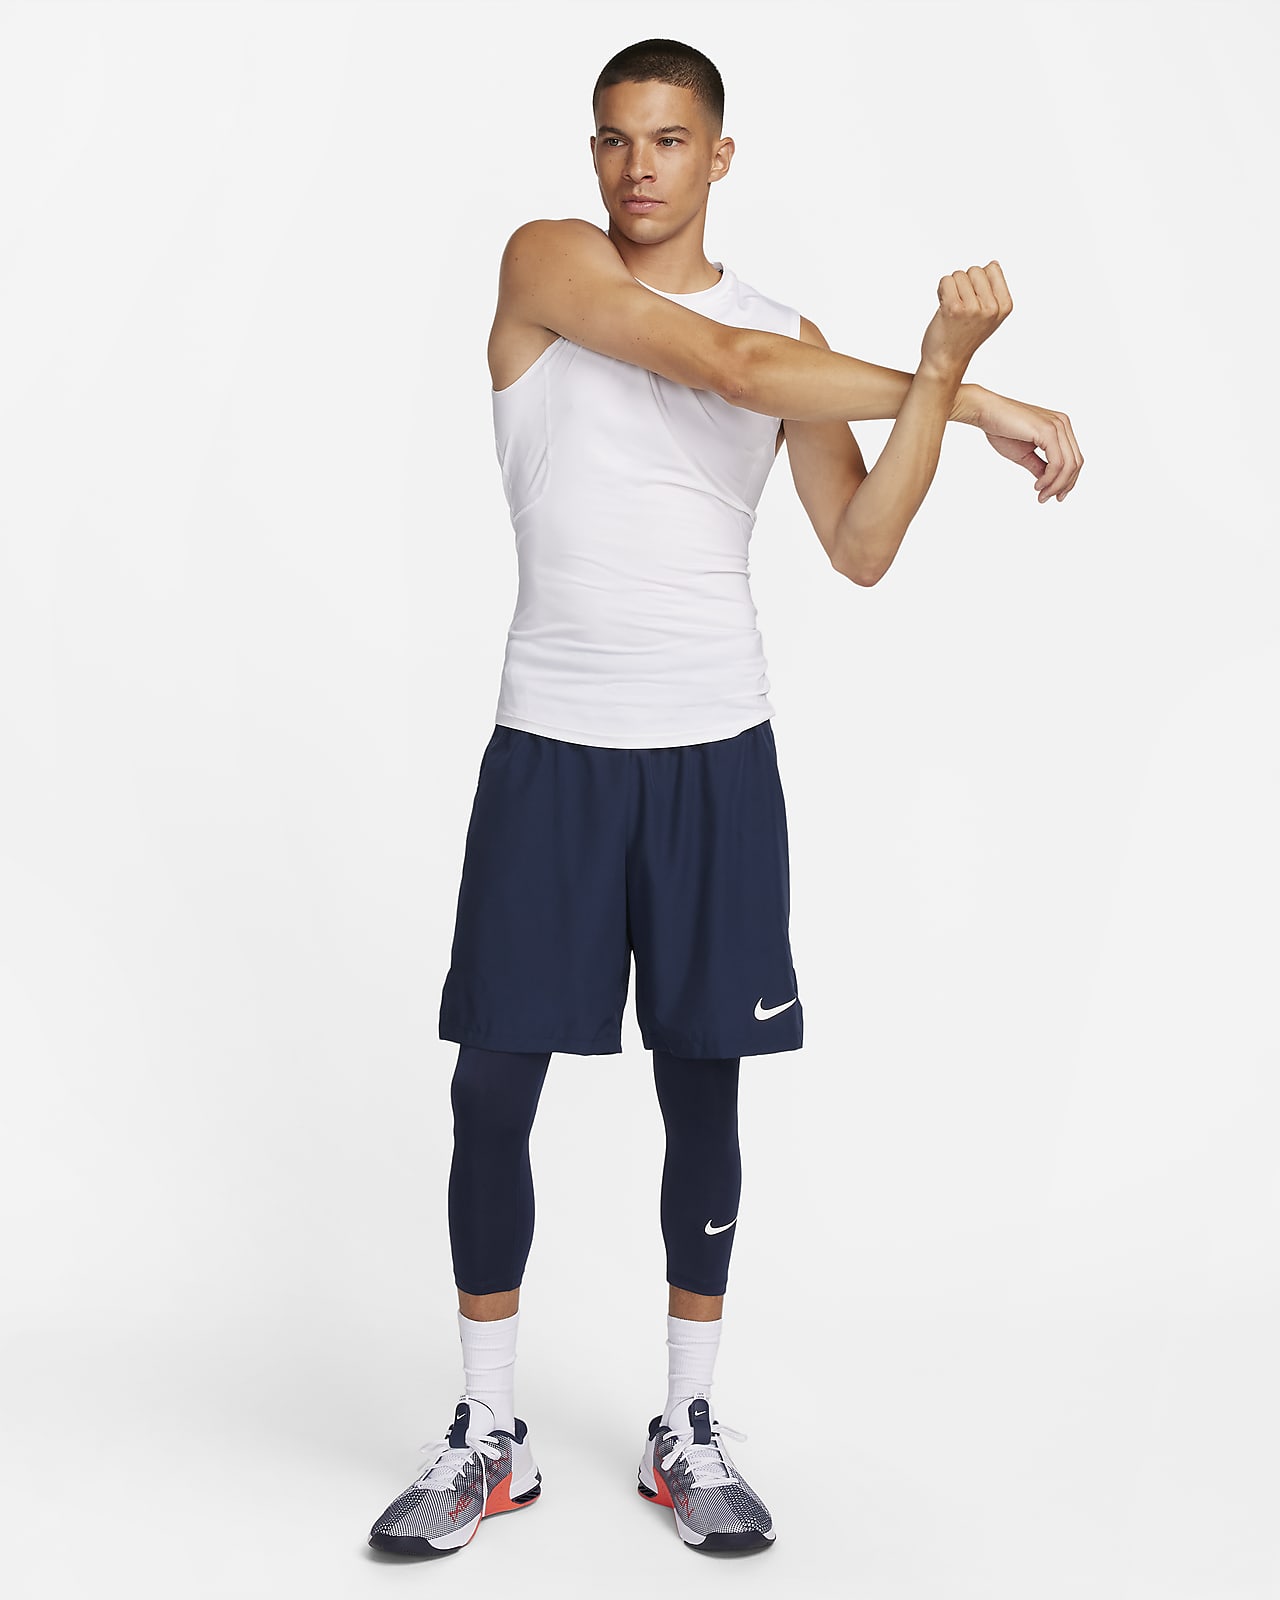  Nike Men's Pro 3qt Tight (White/Pure Platinum/Black, Large) :  Clothing, Shoes & Jewelry